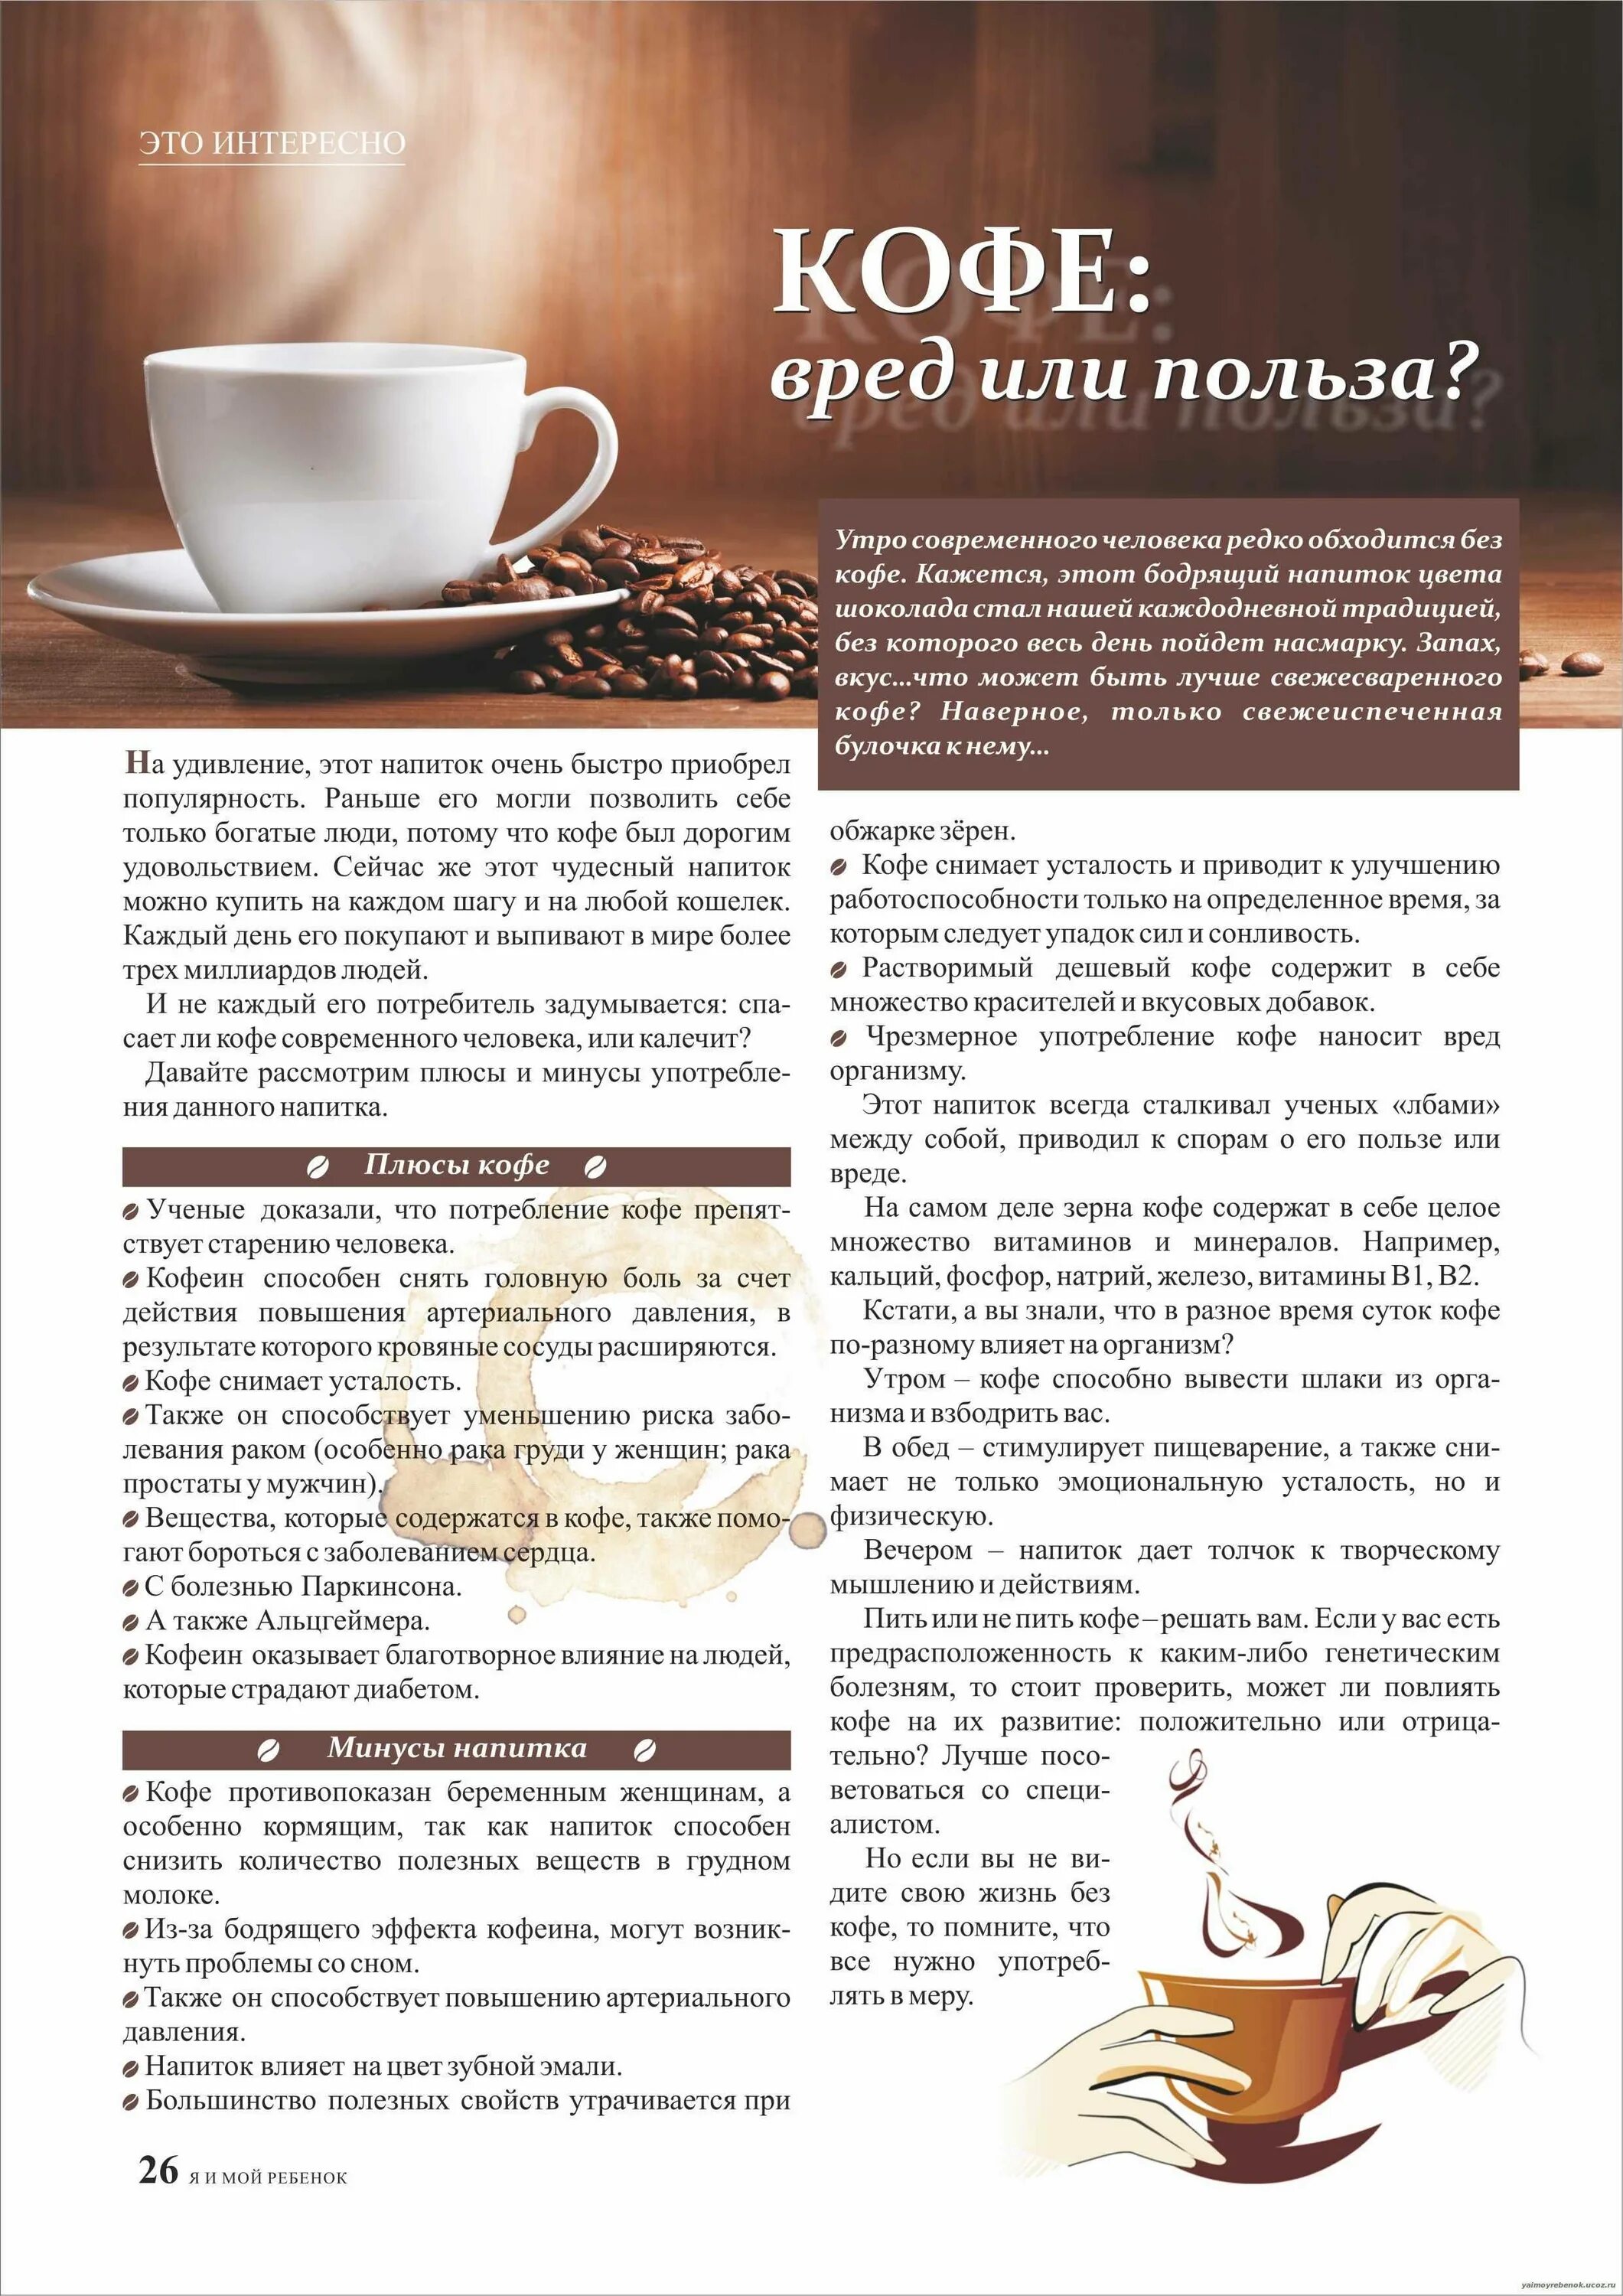 Кофе за сколько до сна. Кофе полезно для организма. Польза кофе. Кофе полезно или вредно. Польза и вред кофе.